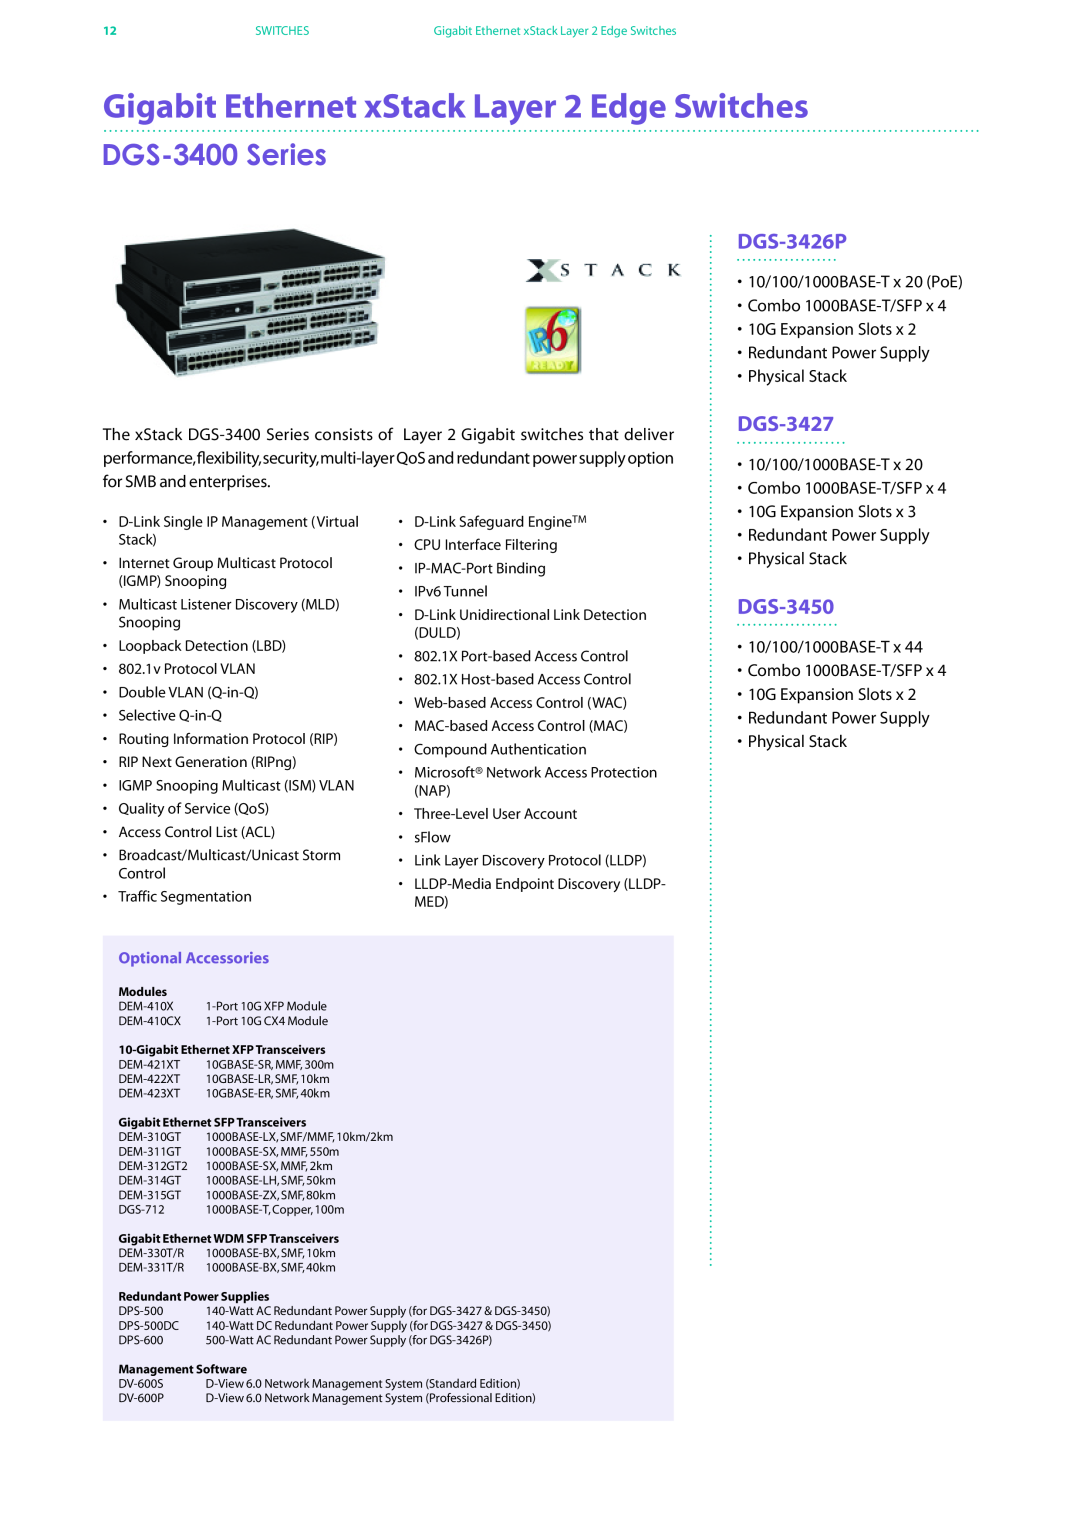 D-Link DES-7200 manual Gigabit Ethernet xStack Layer 2 Edge Switches, DGS-3400 Series, DGS-3426P, DGS-3427, DGS-3450 